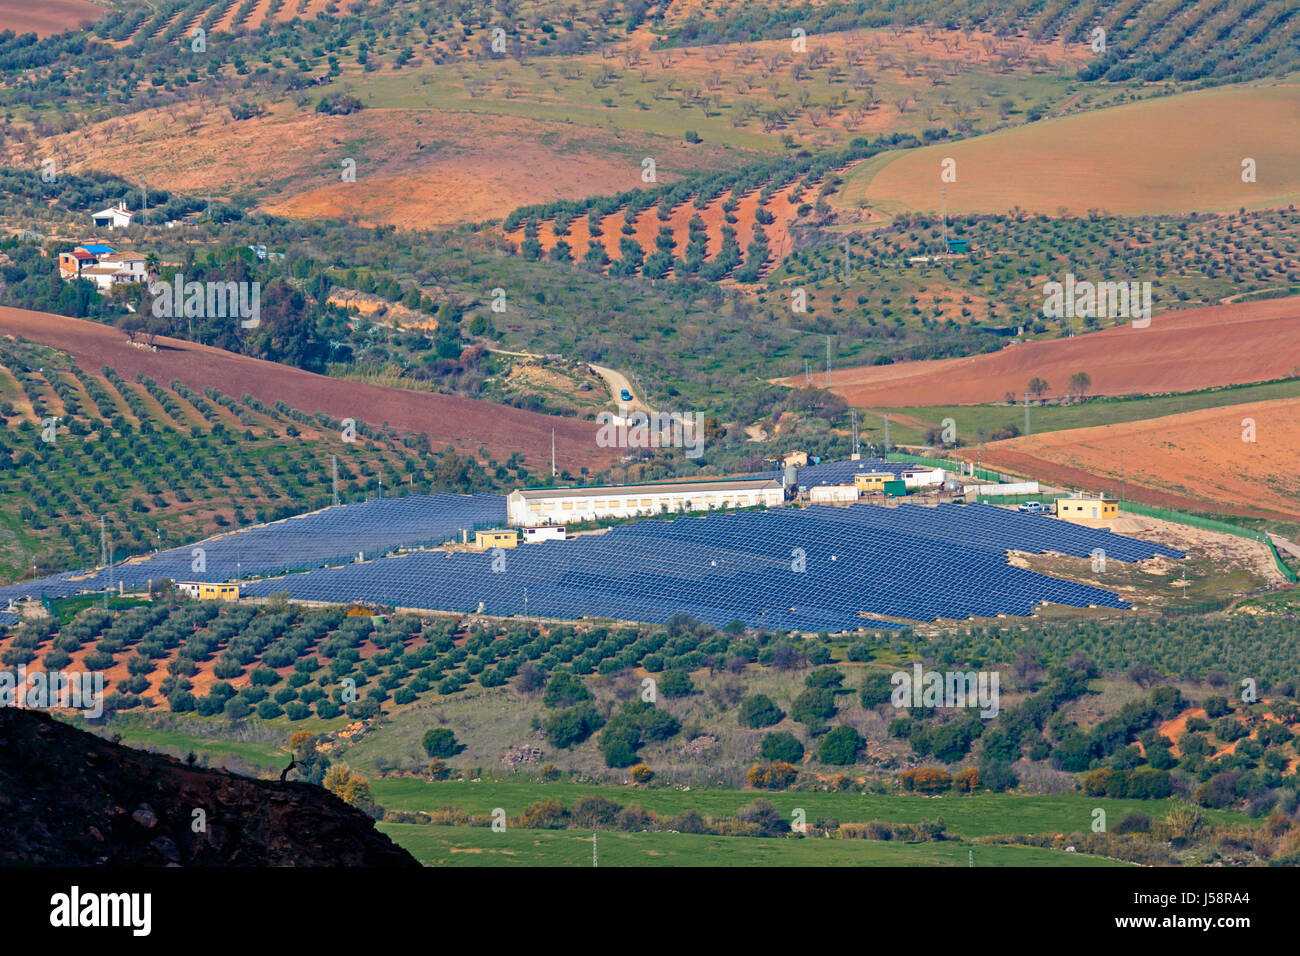 Solar power plant, derrière Ardales, la province de Malaga, Andalousie, Espagne du sud. Banque D'Images